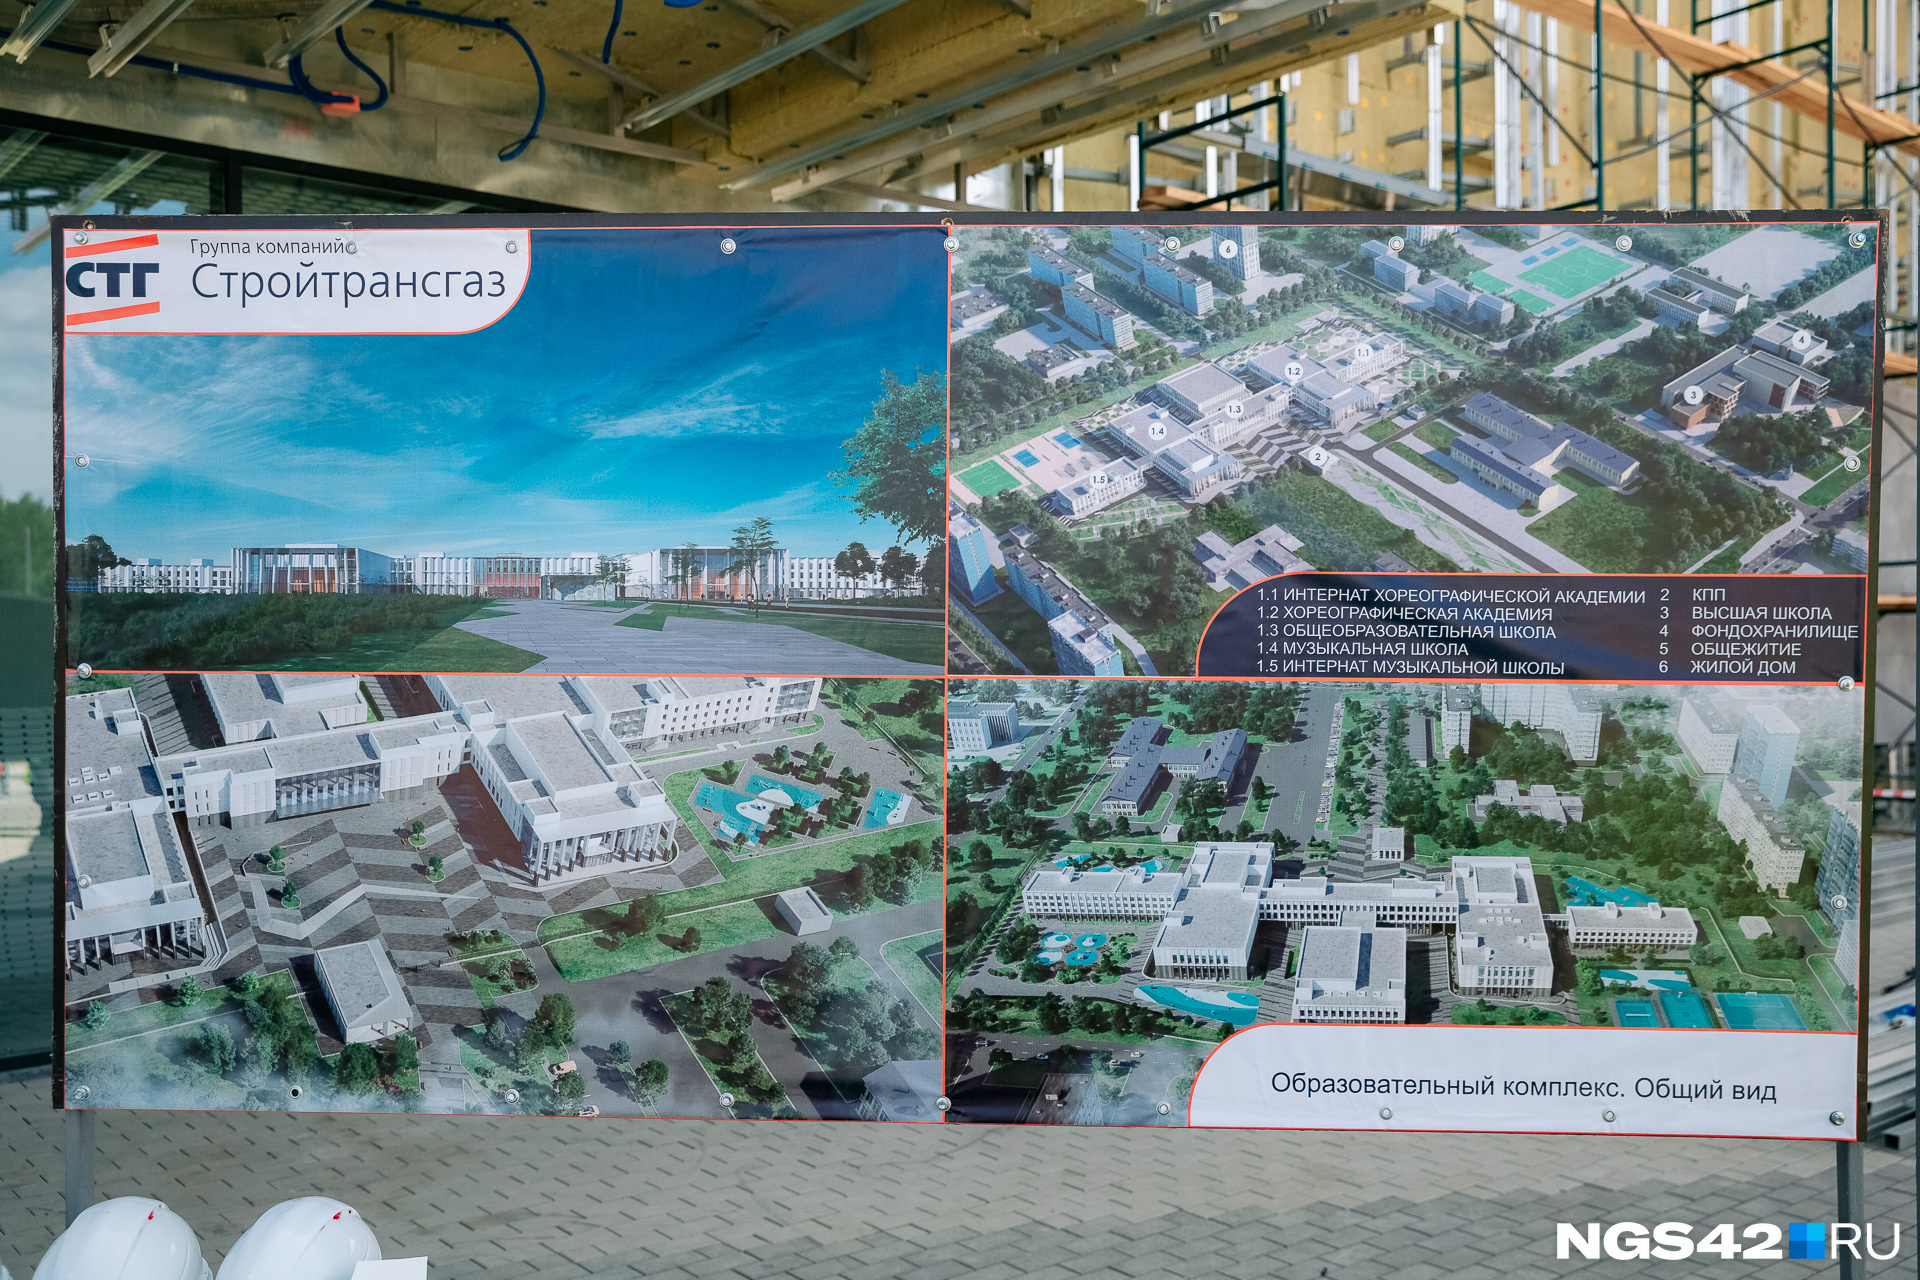 Культурный кластер в Кемерово начали строить в 2019 году. Он разбит на две части: культурно-образовательную (Ленинский район) и музейно-театральную (Центральный район)